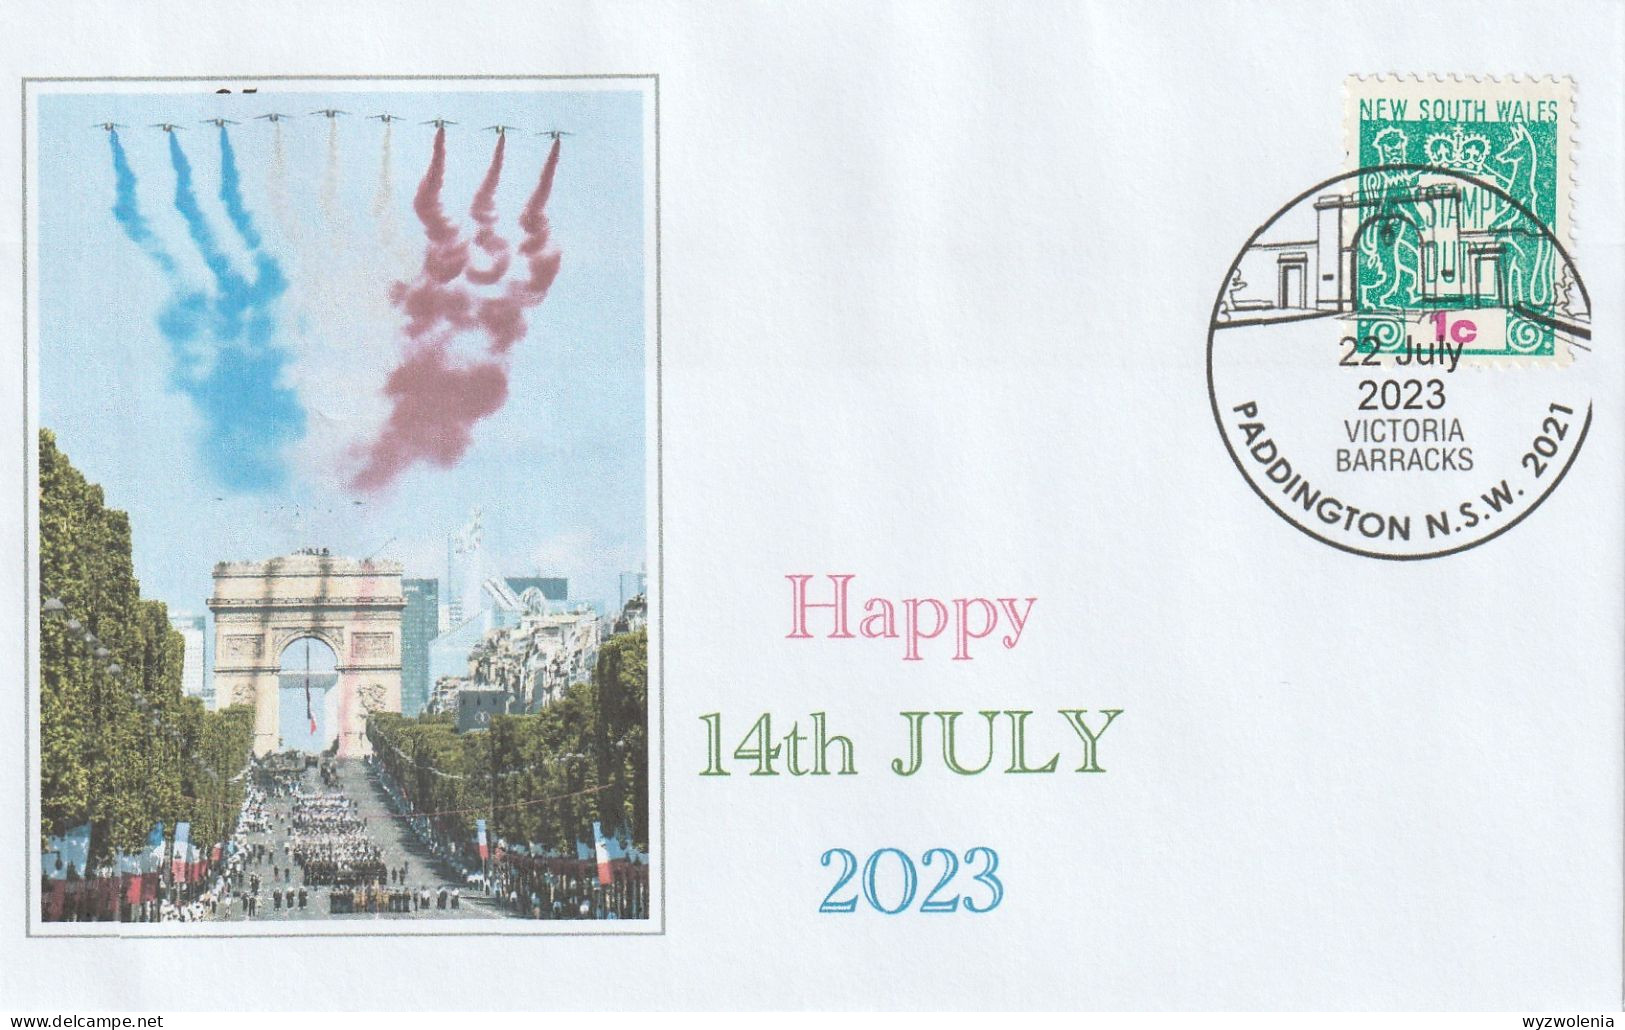 A 733) New South Wales Stamp Duty (Steuermarke), Paddington 22.7.2023, Französischer Nationalfeiertag - Cinderellas